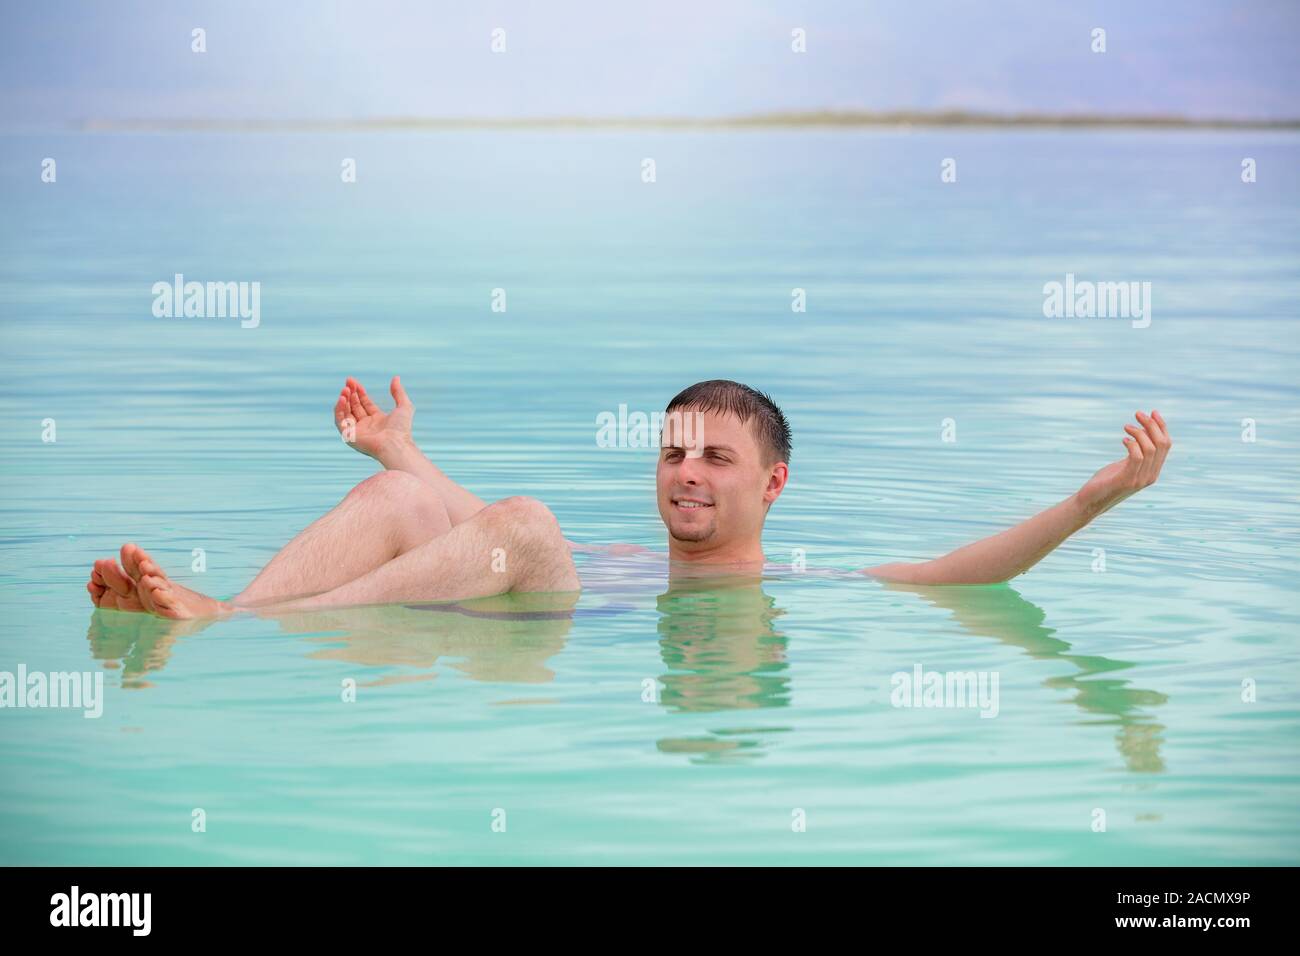 Mann mit den Händen in der Luft schwimmen im Toten Meer. Spa verfahren. Sommer, Urlaub, Reise-Konzept. Szene aus dem Toten Meer Stockfoto